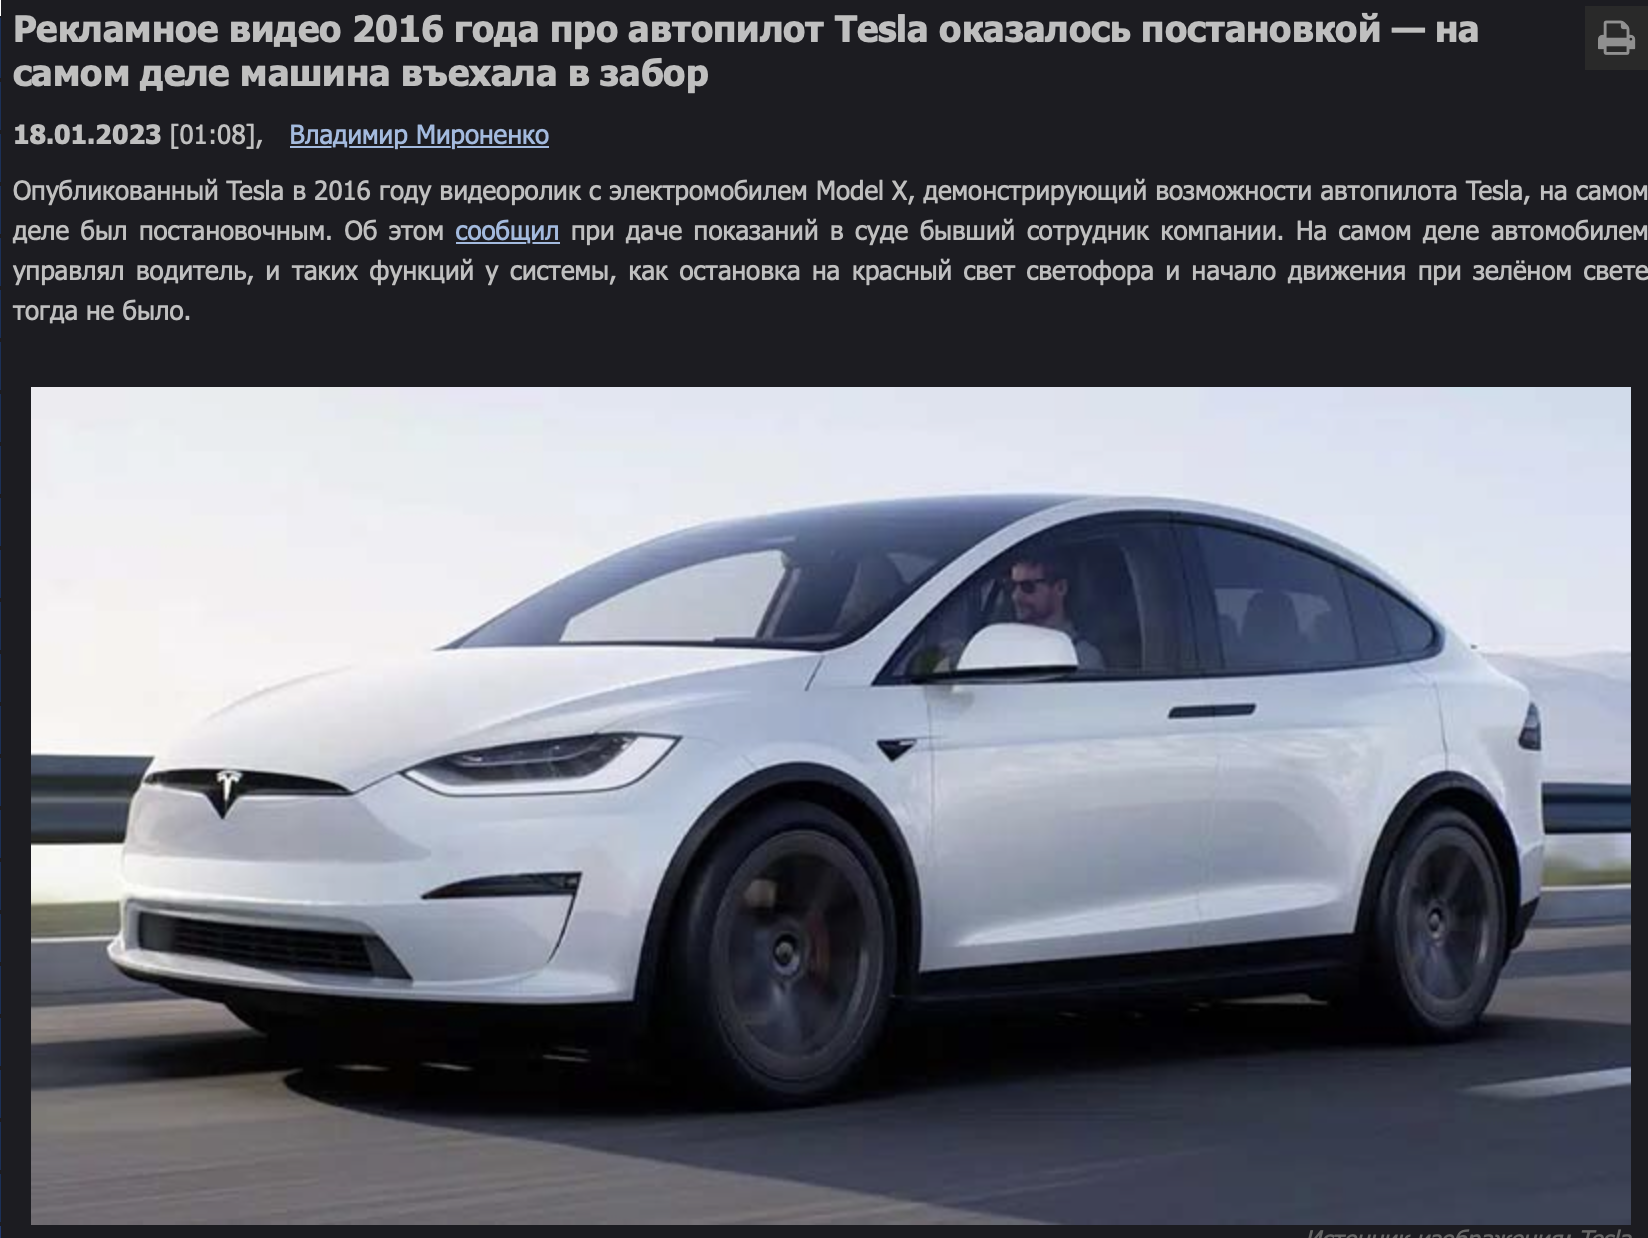 Tesla еще в 2016 году могла ездить без водителя